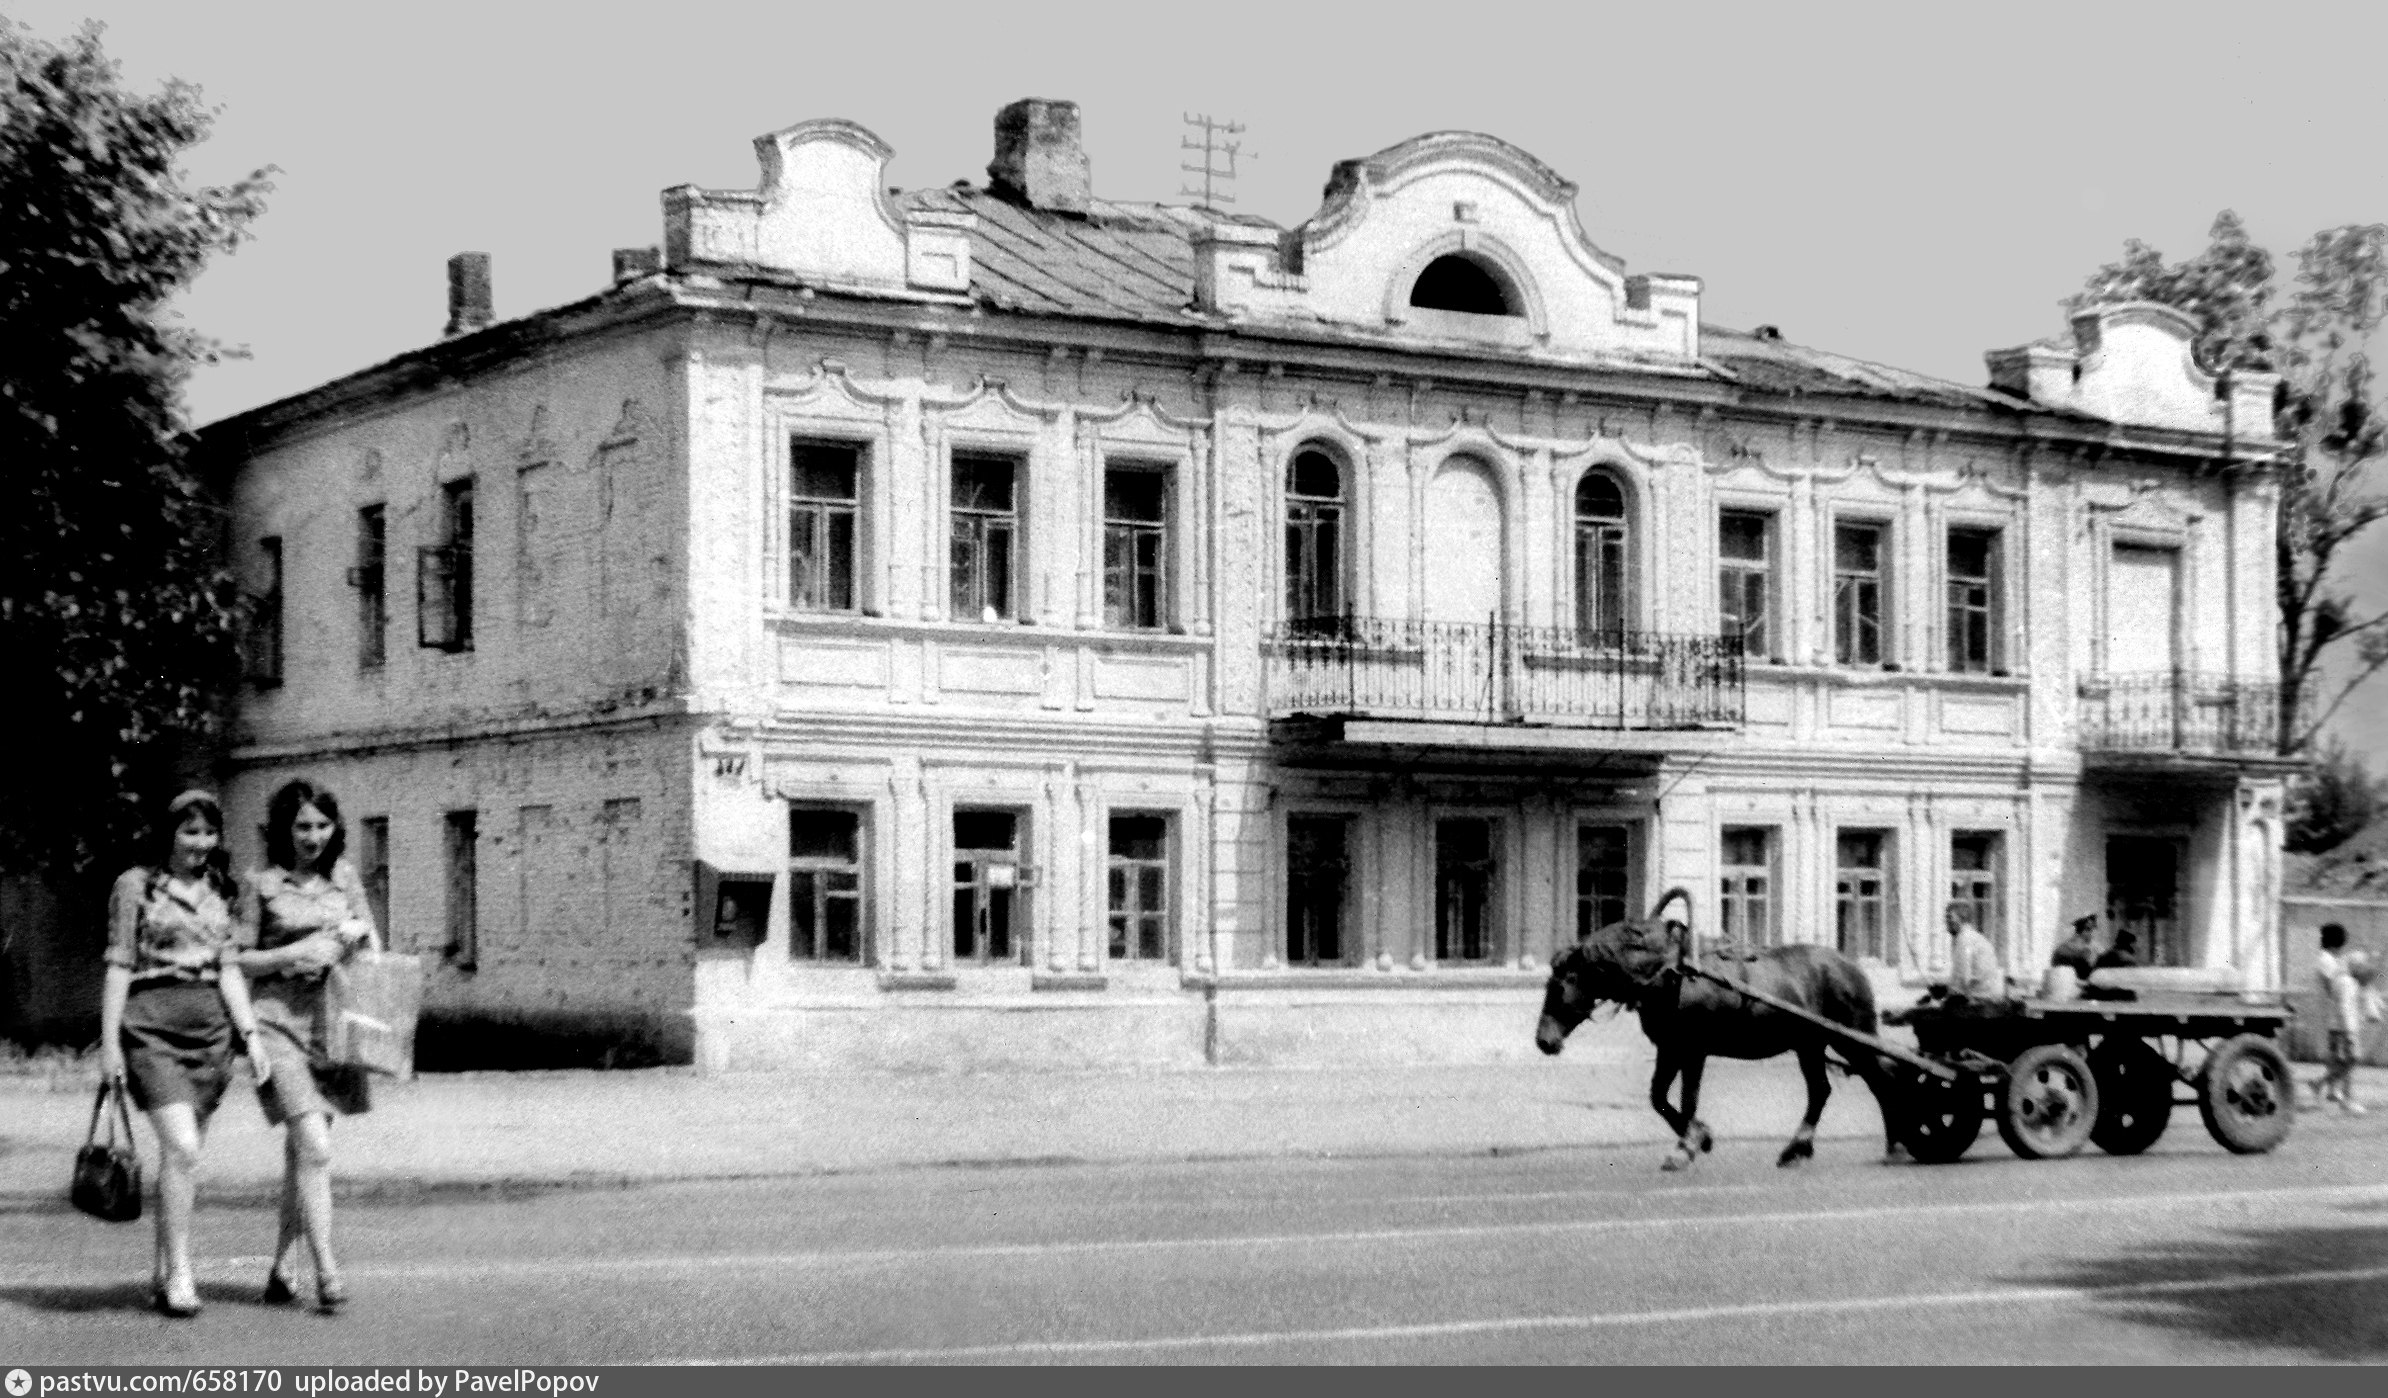 Центральная Аптека Кирсанов